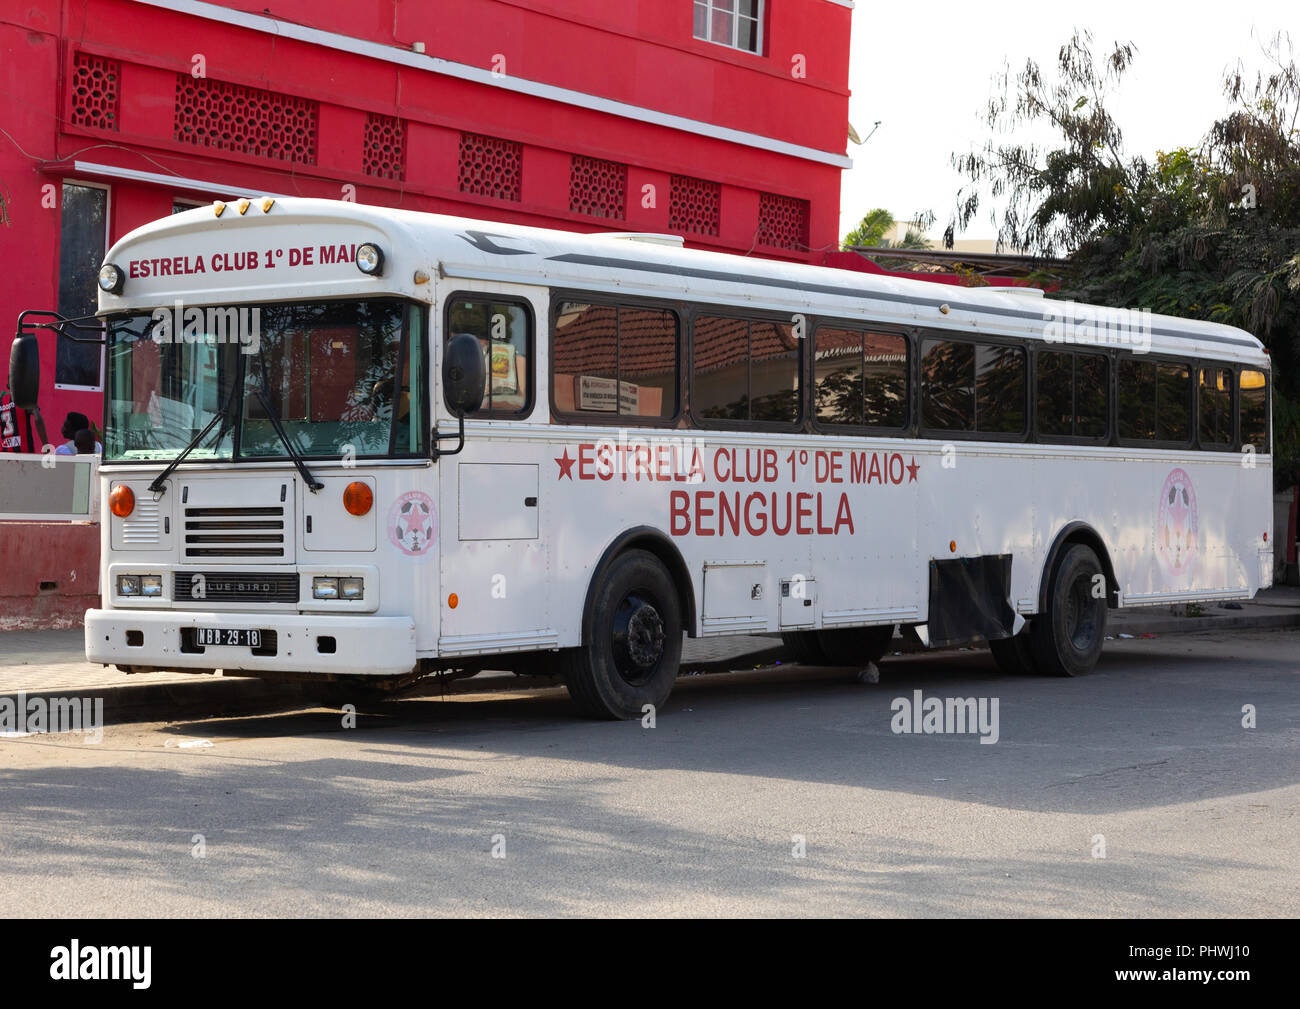 Bus pour une équipe de football, dans la province de Benguela, Benguela, Angola Banque D'Images